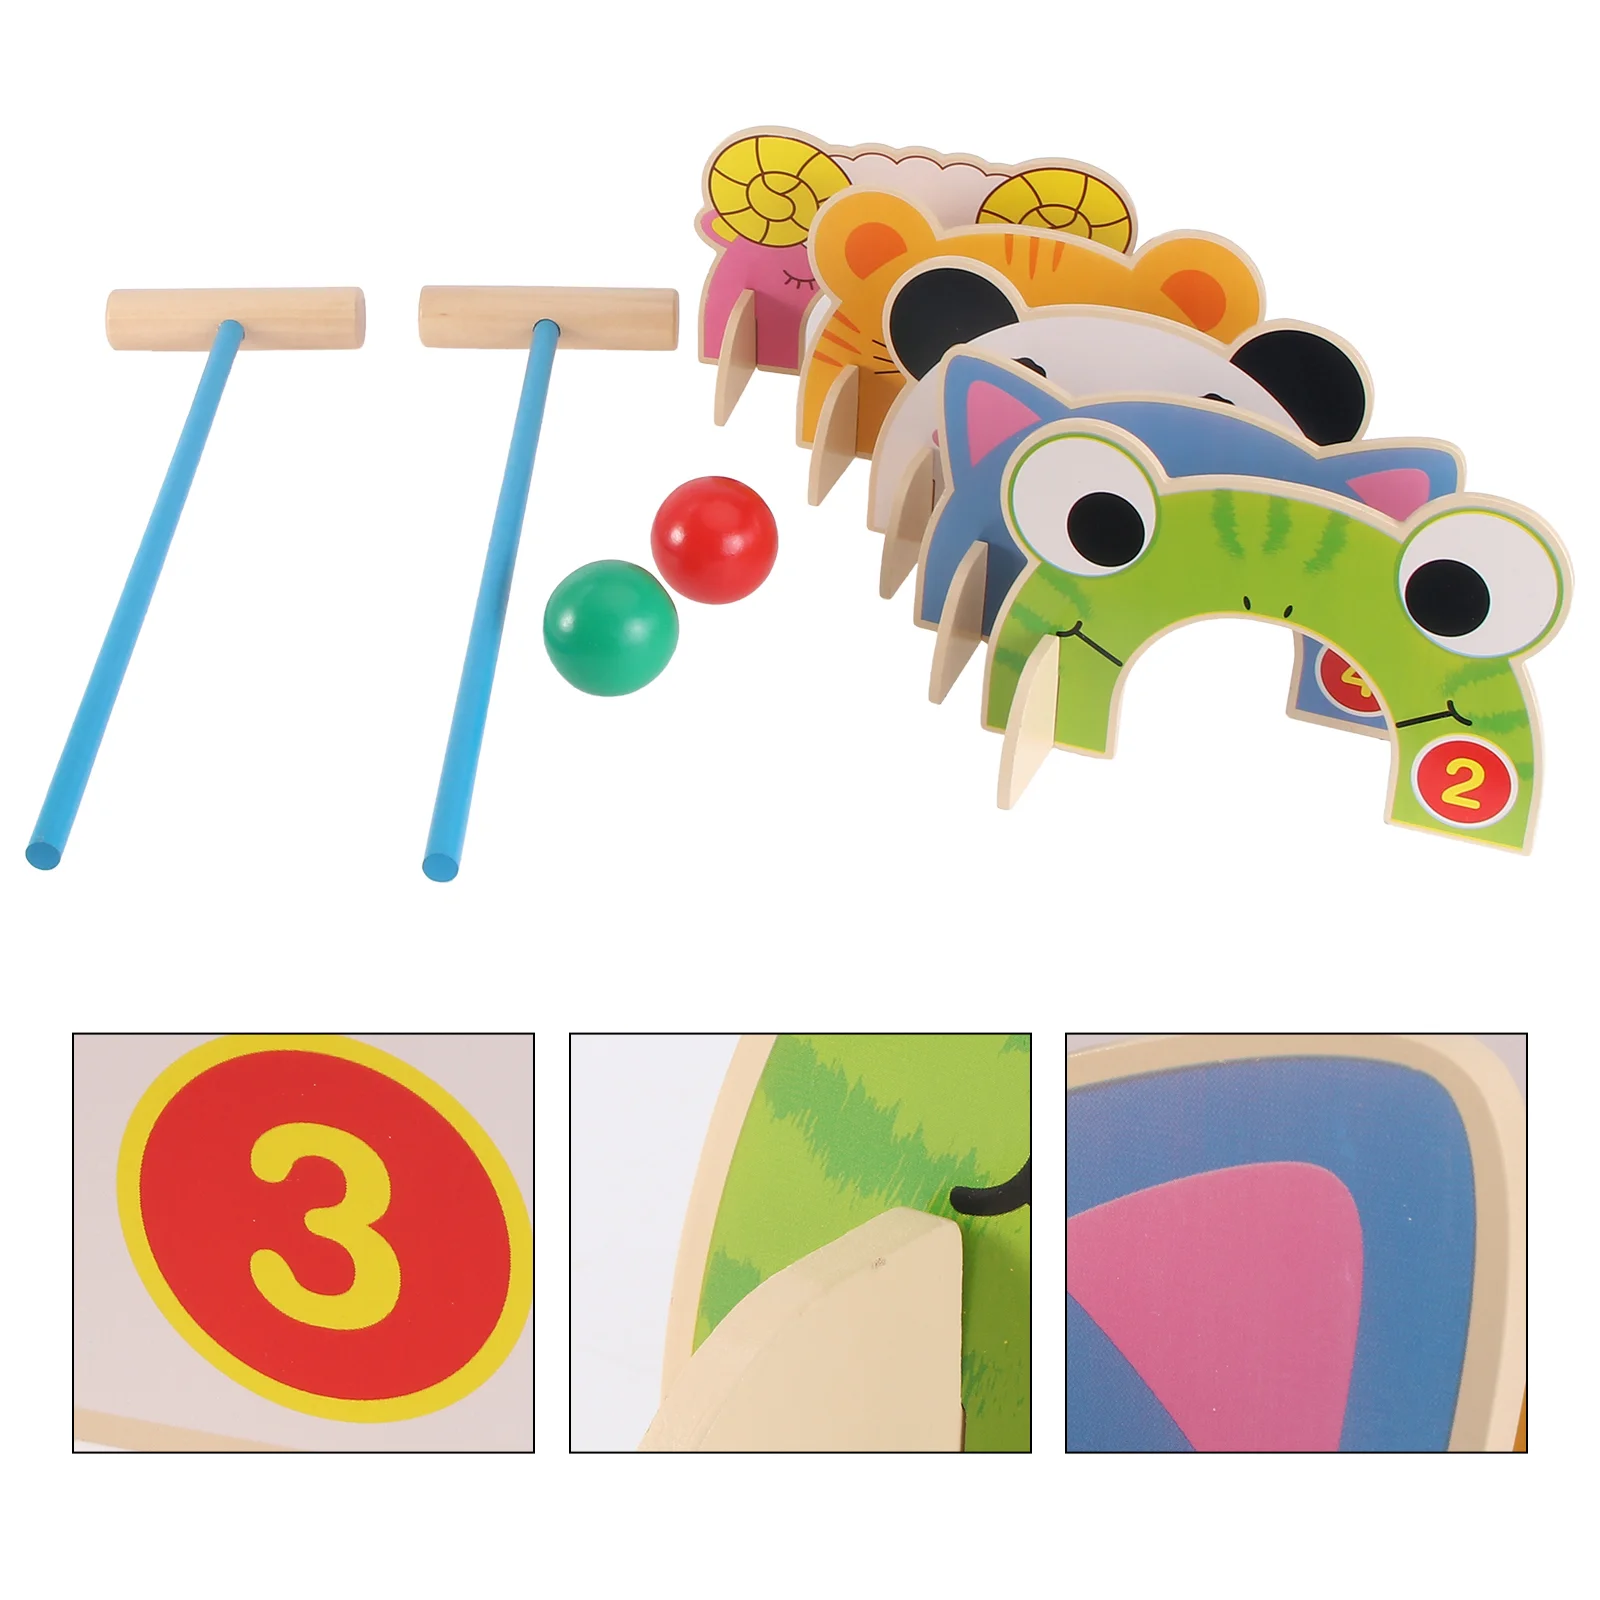 

Детская игрушка-Крокет, детская развивающая игрушка, интерактивные детские товары, игрушки для малышей